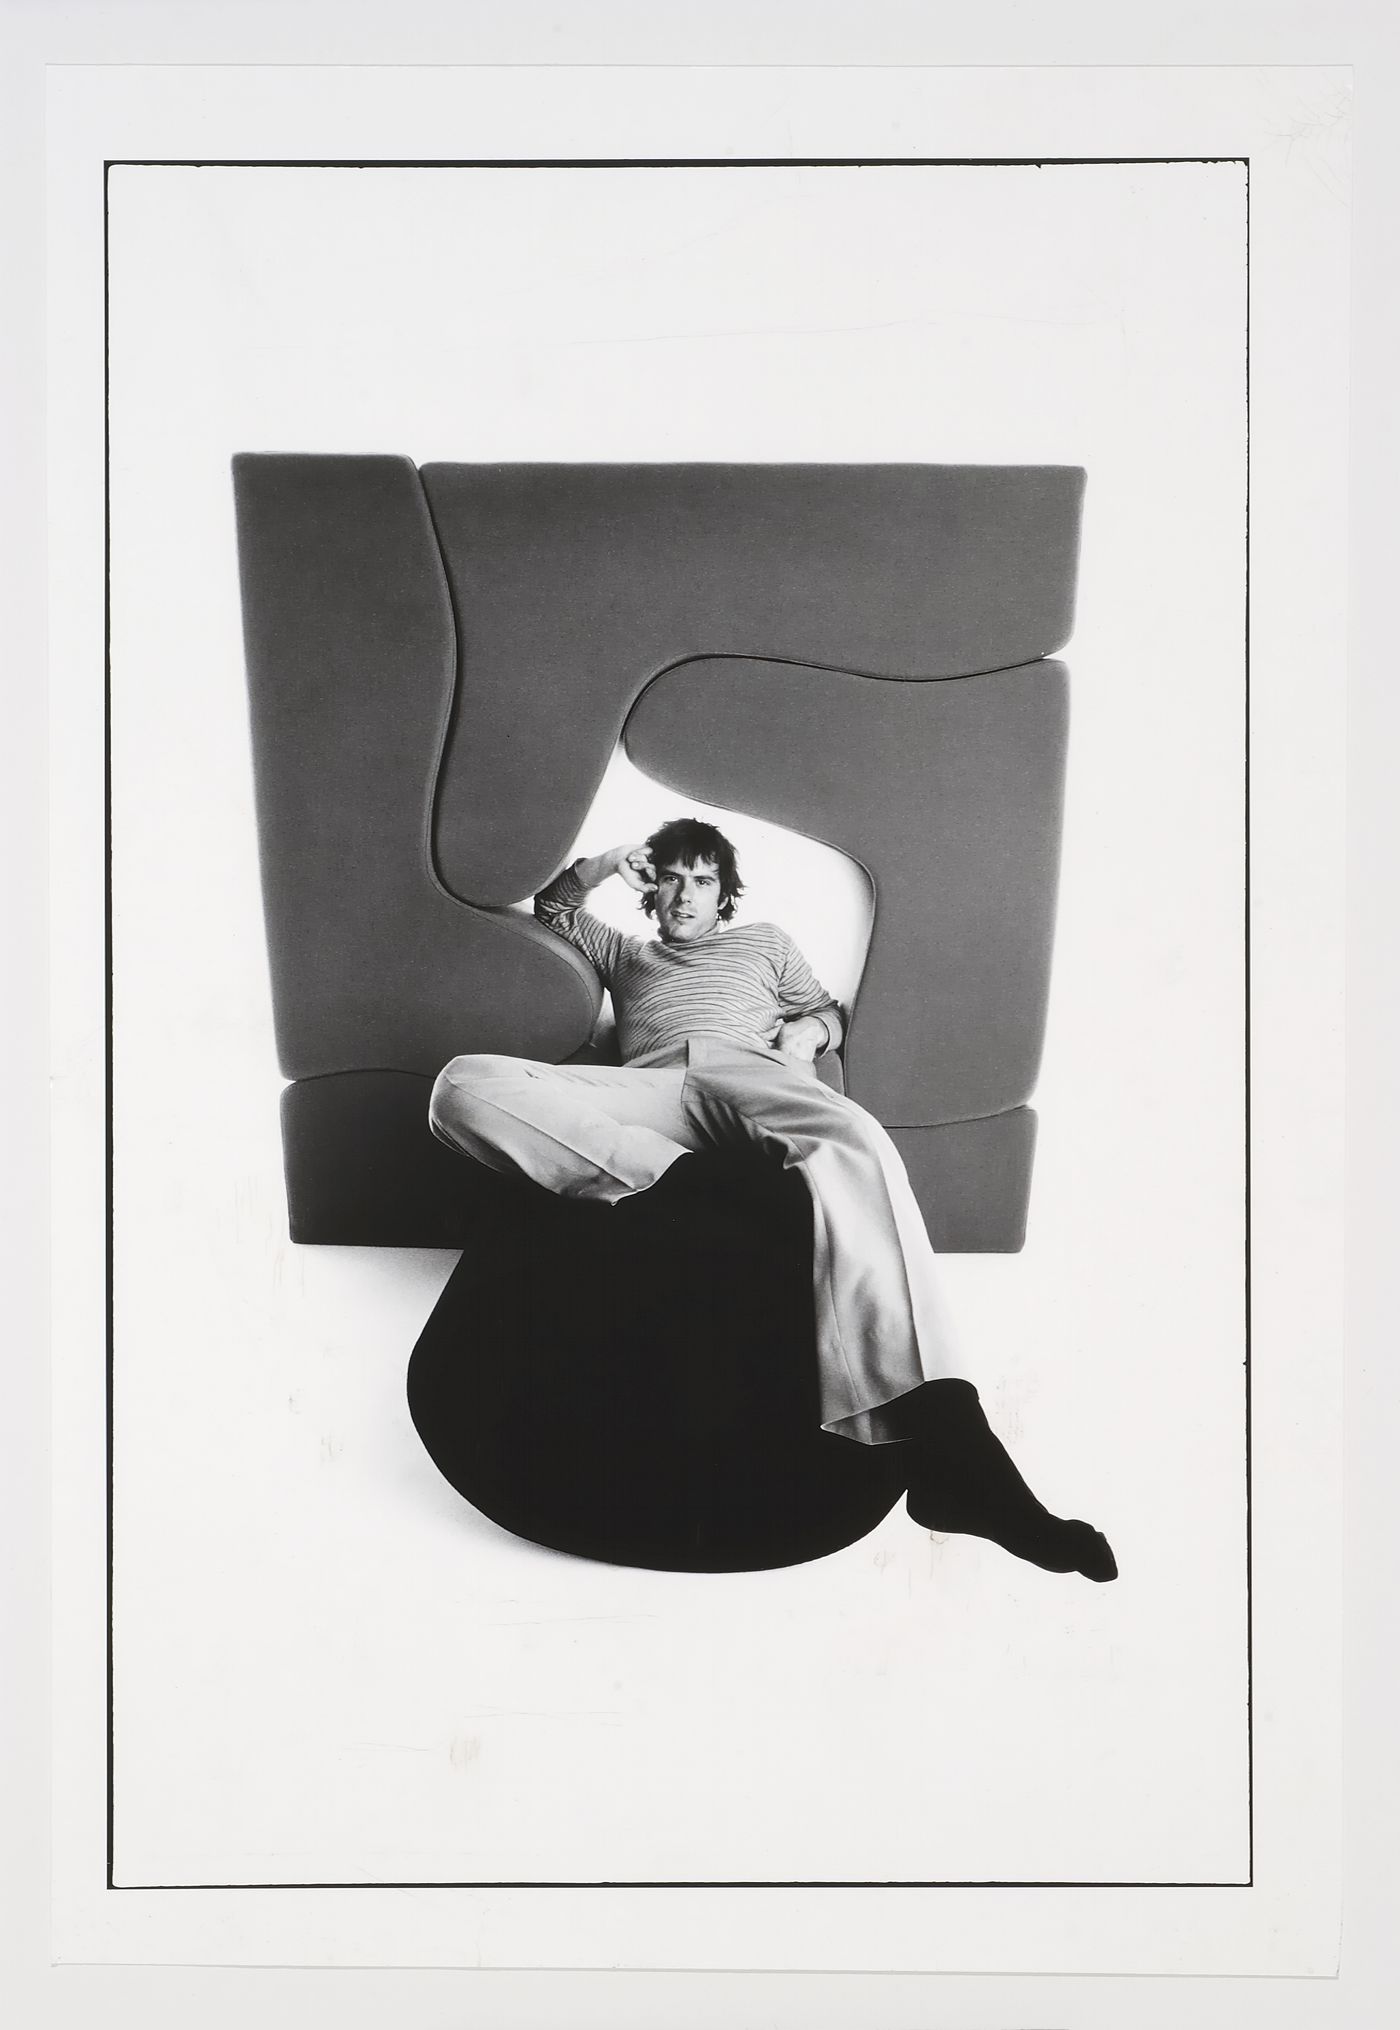 Gordon Matta-Clark in a Malitte Chair designed by Roberto Matta